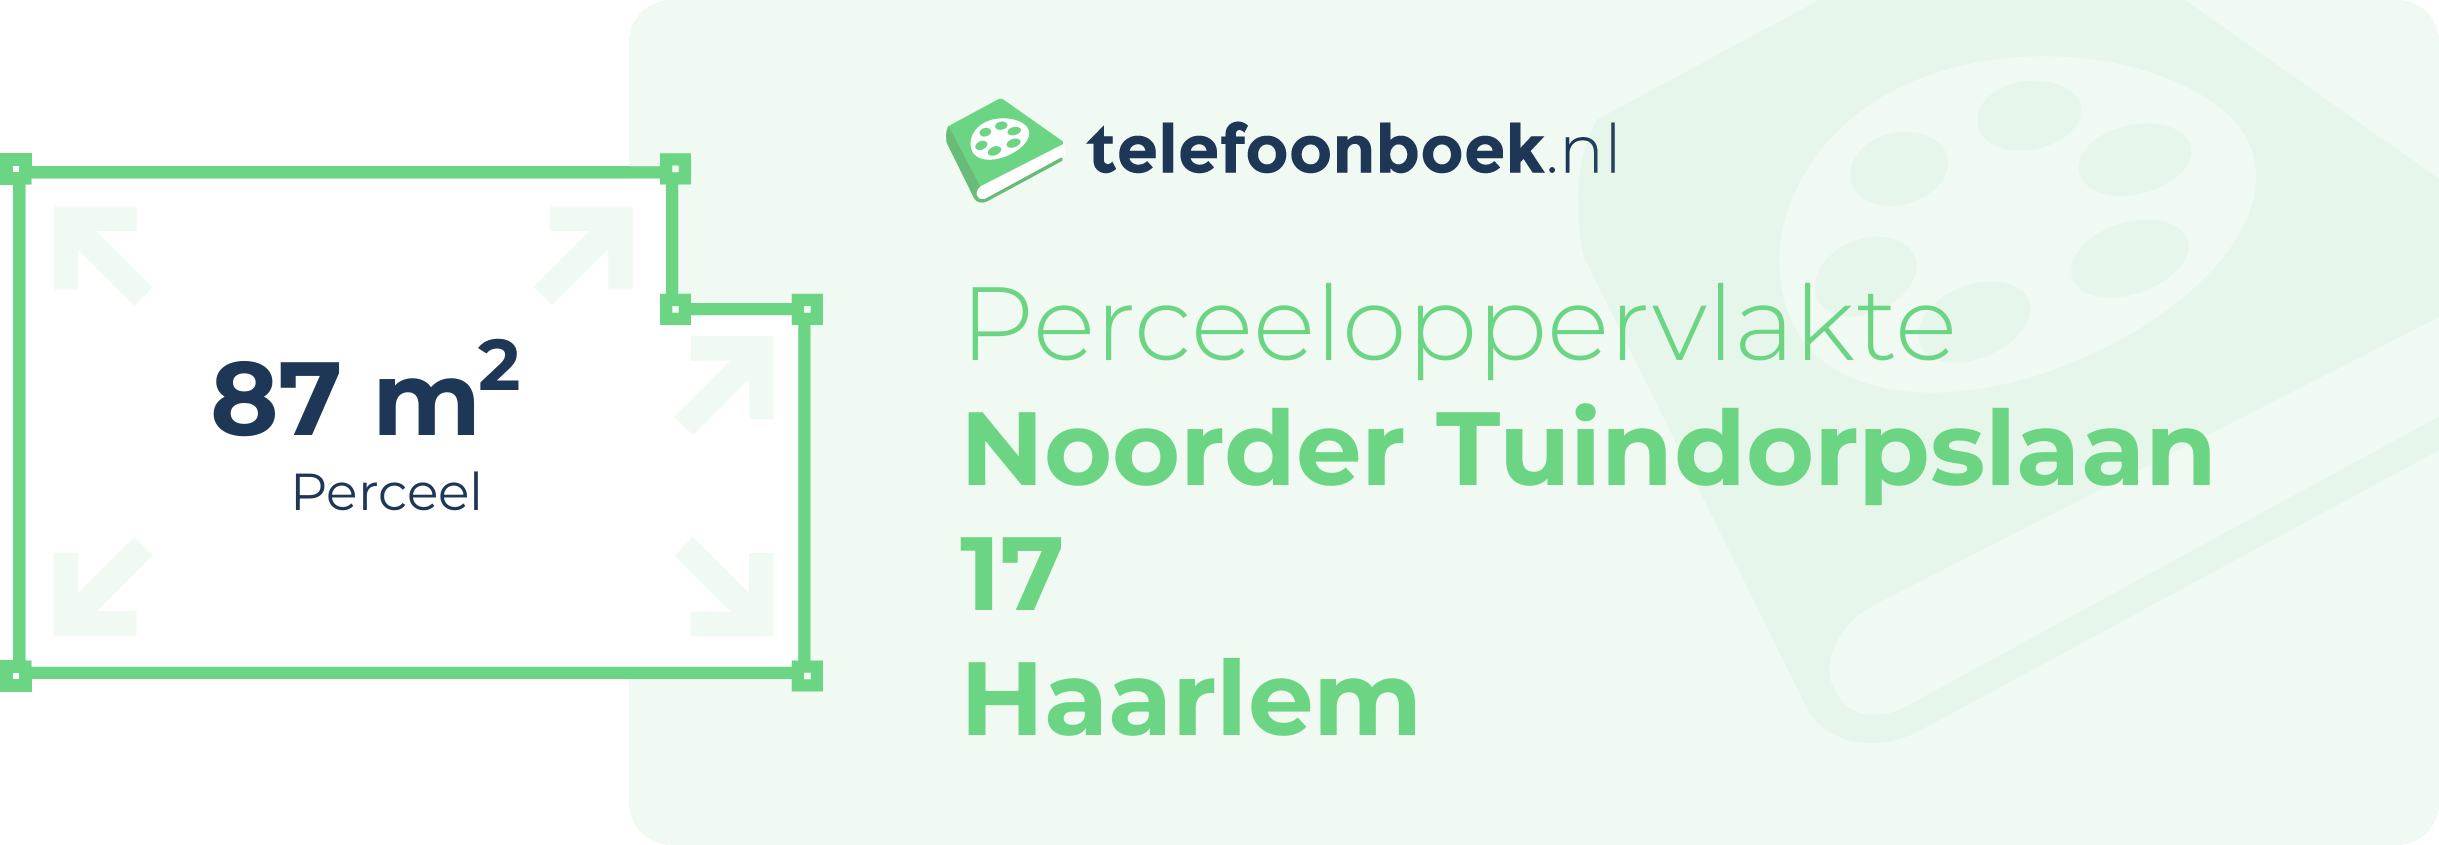 Perceeloppervlakte Noorder Tuindorpslaan 17 Haarlem